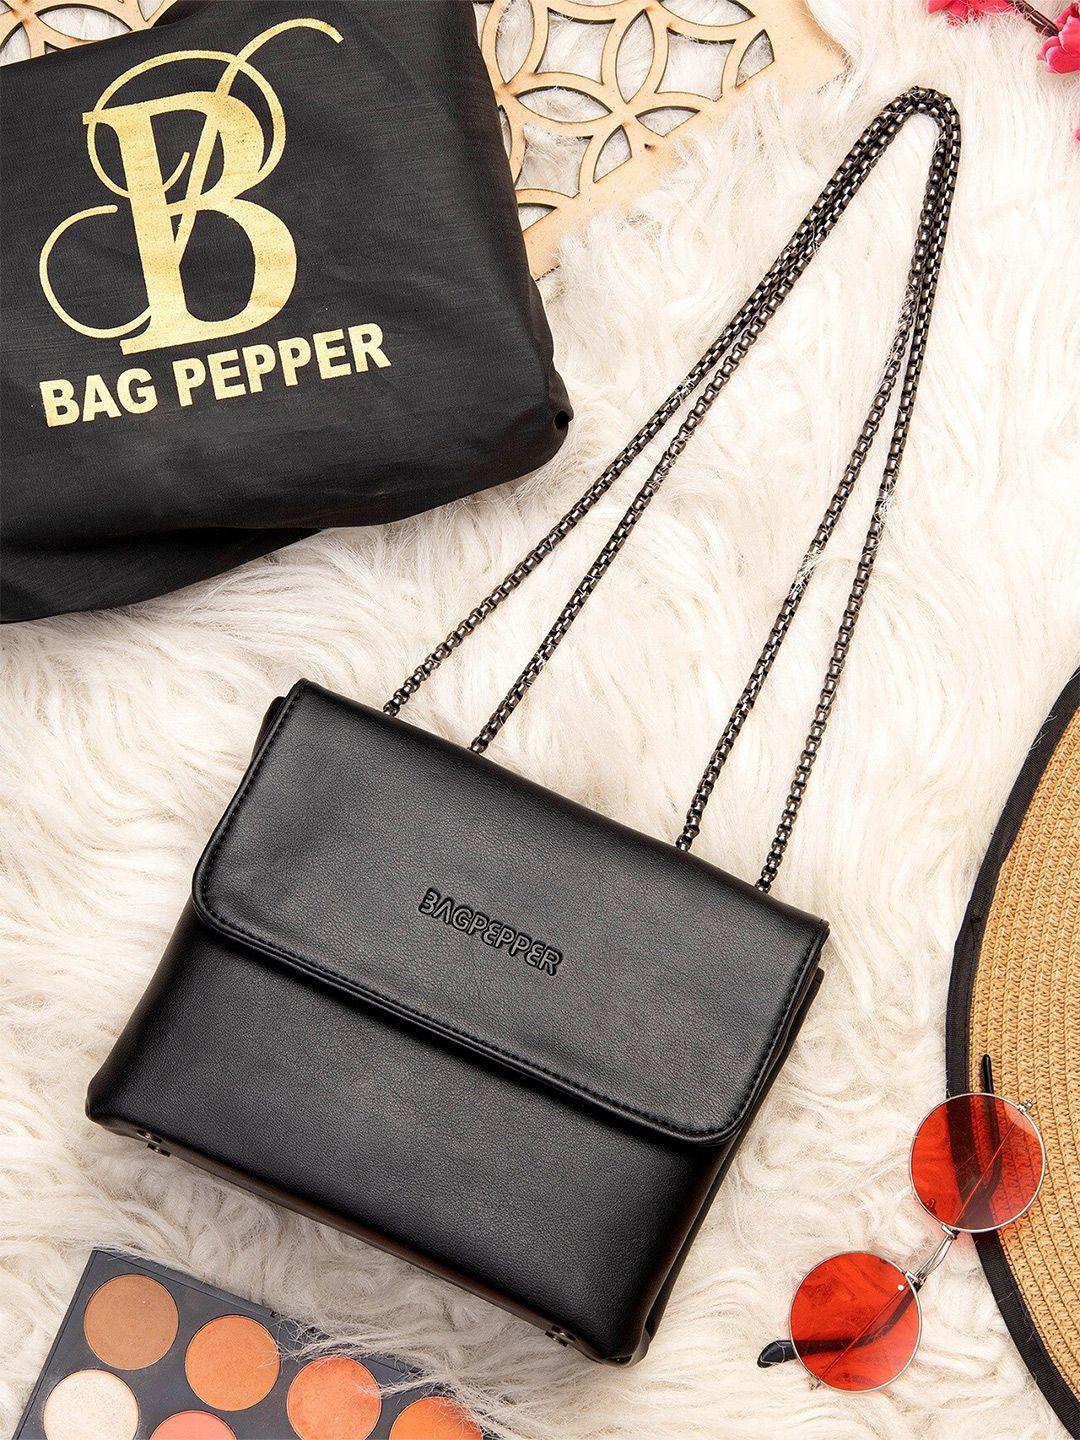 bag pepper structured handheld bag